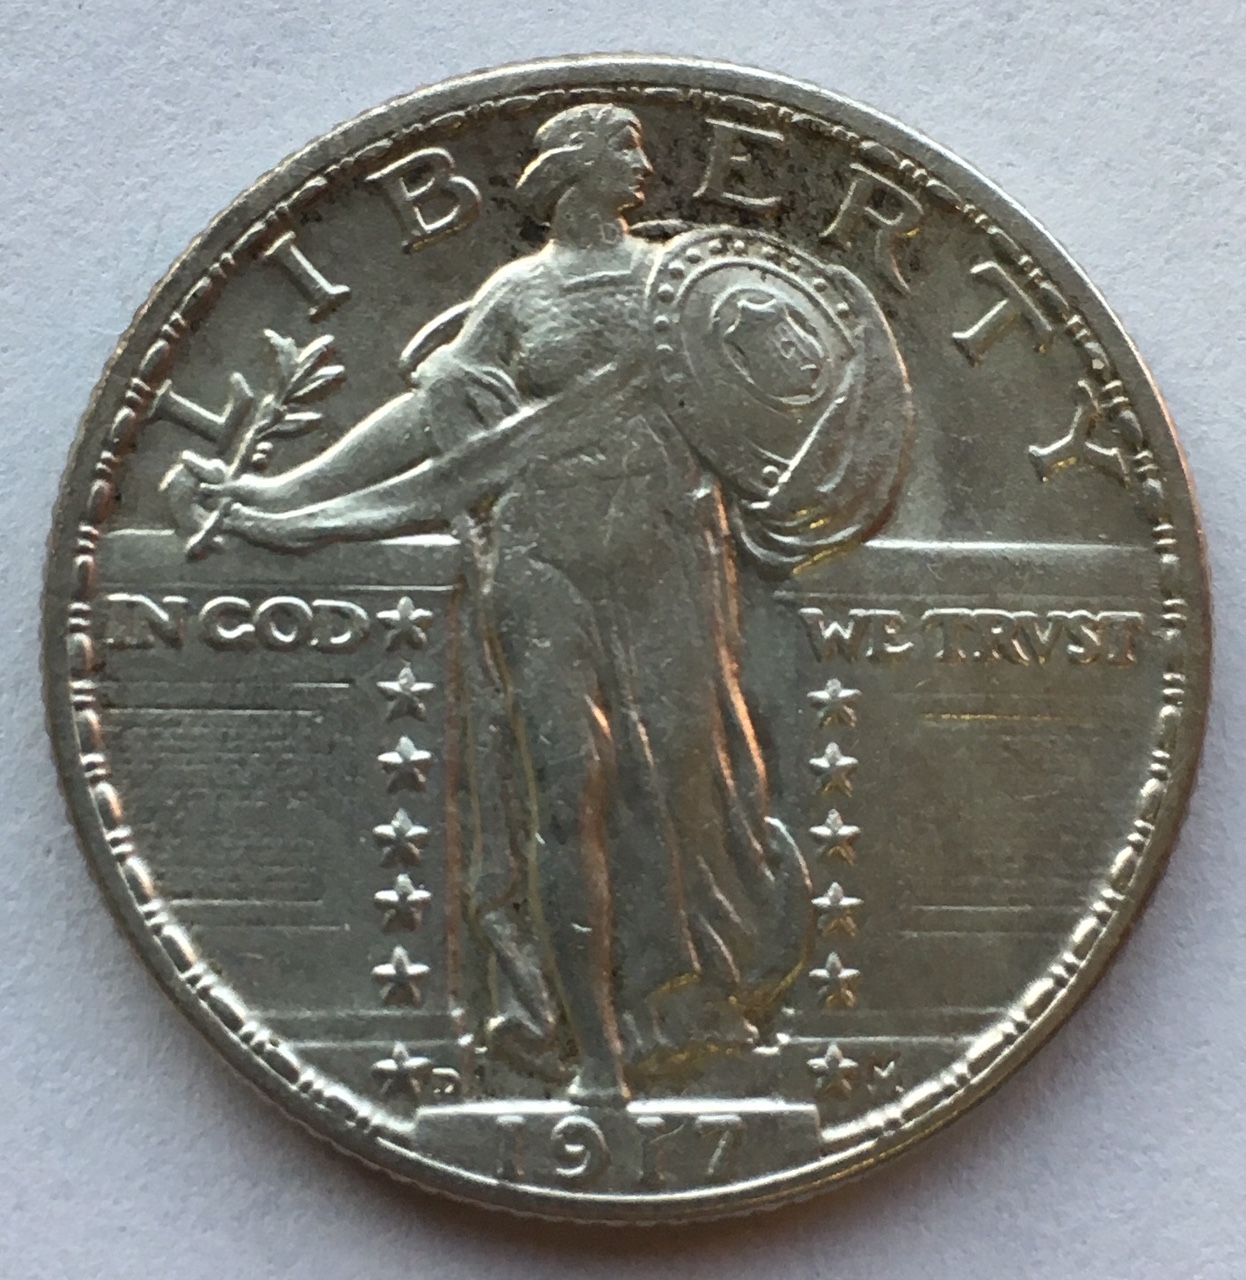 coins_20191009 (8).jpg